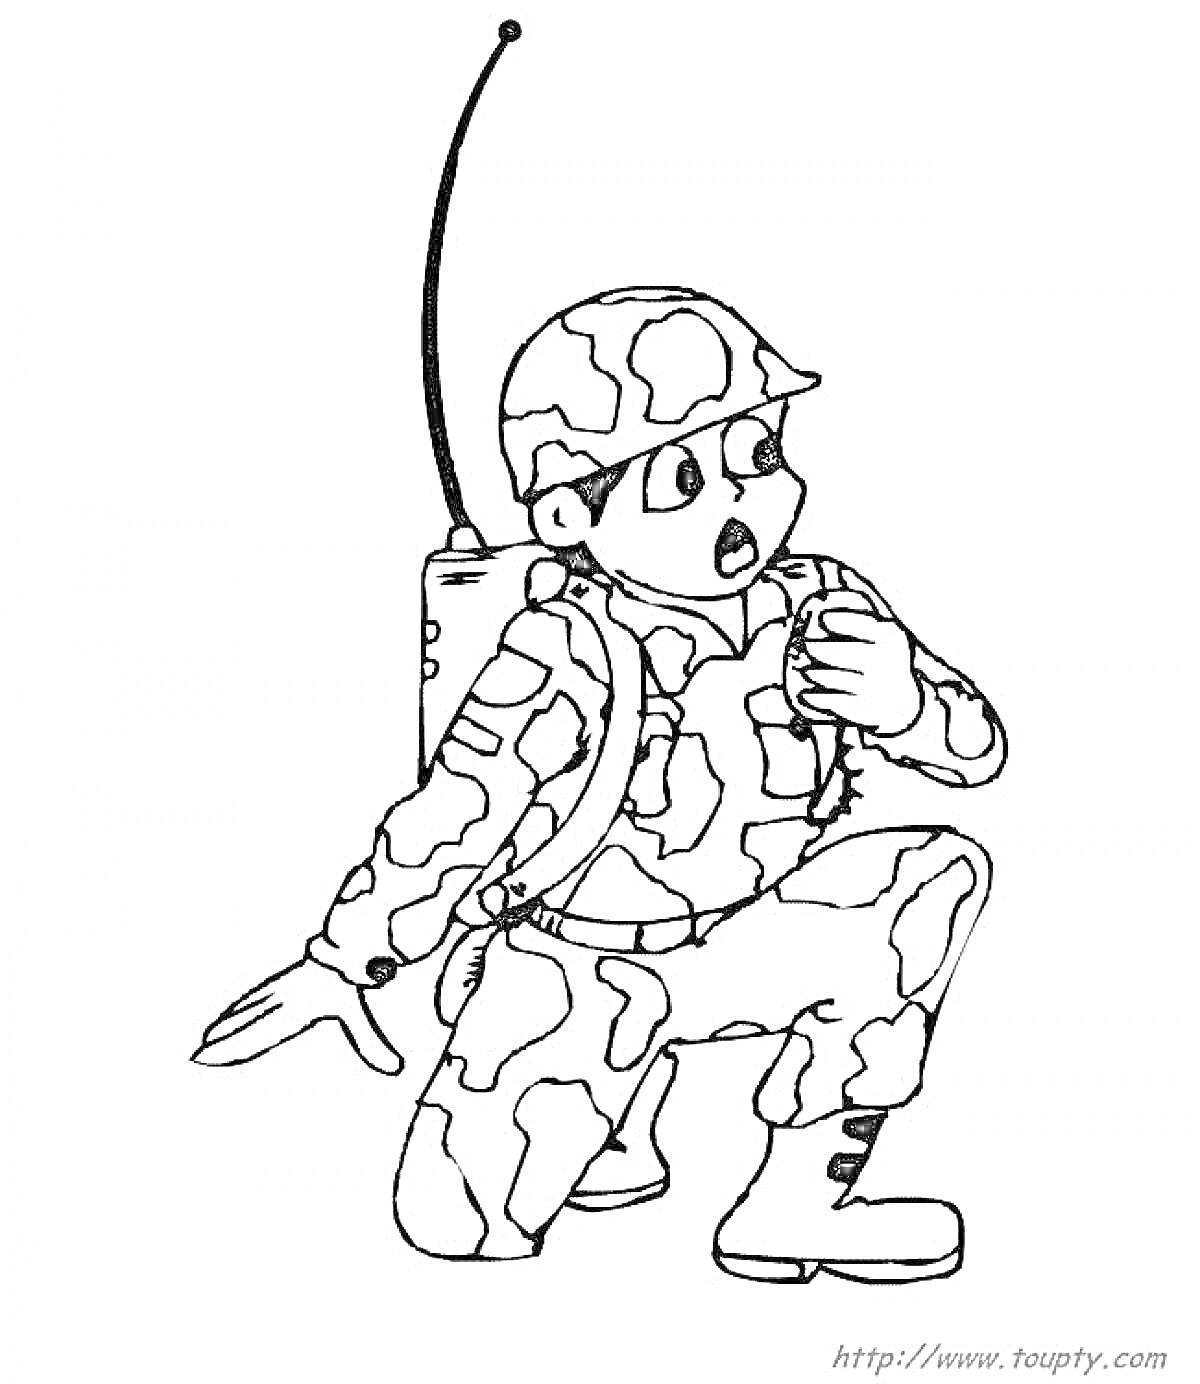 солдат с радиостанцией на коленях в камуфляже